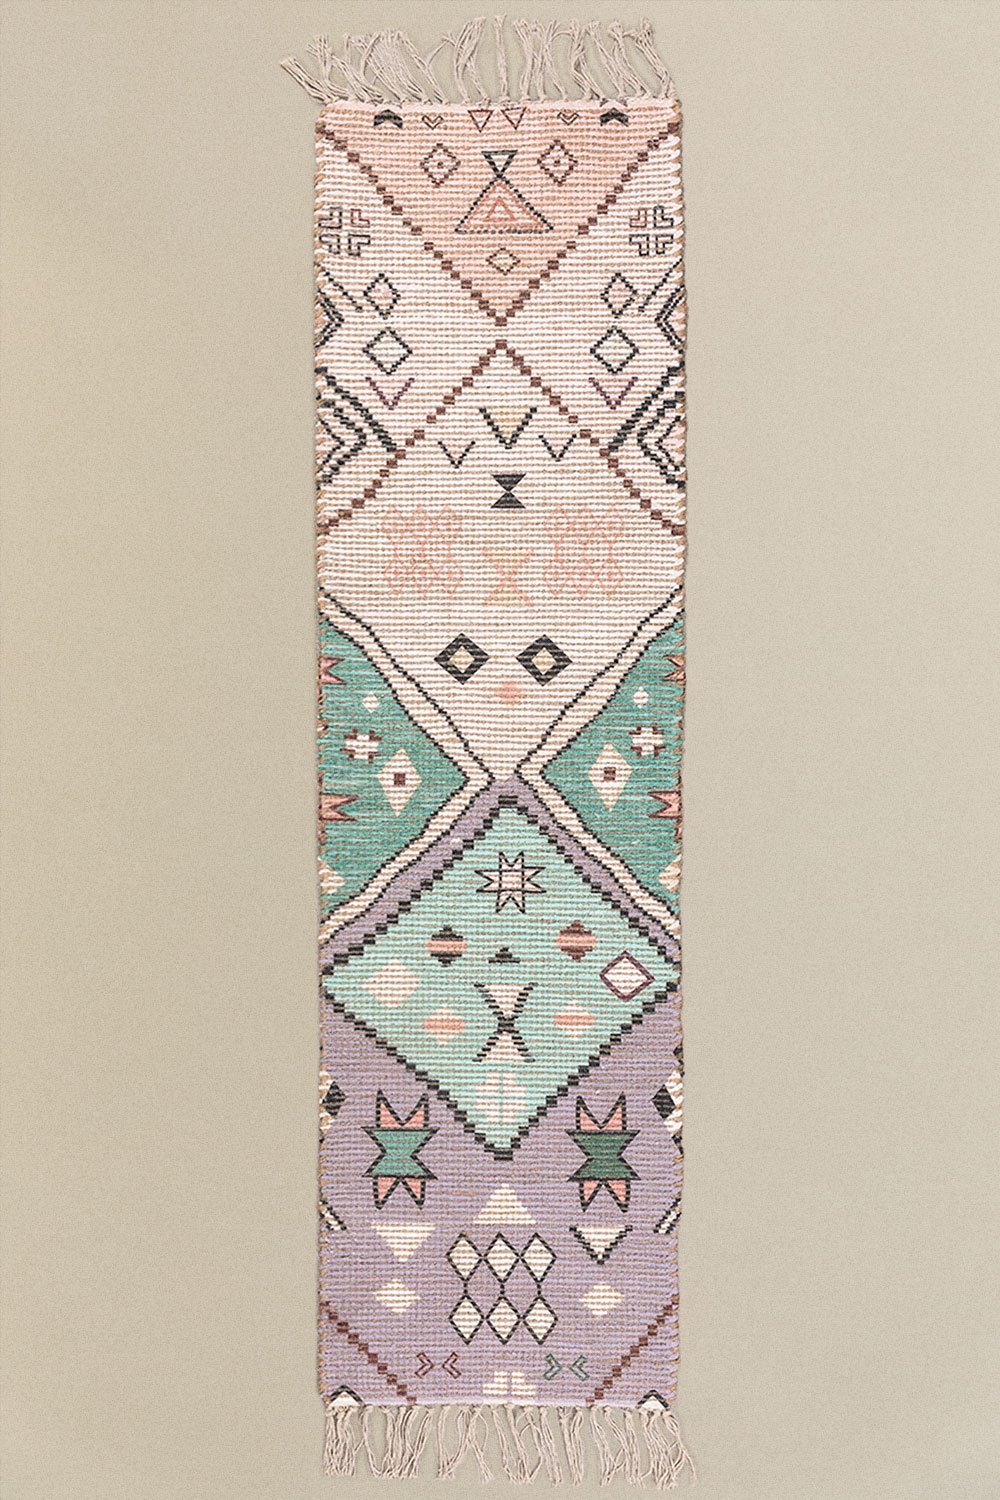 Gangtapijt van jute en stof (170x42,5 cm) Nuada, galerij beeld 1